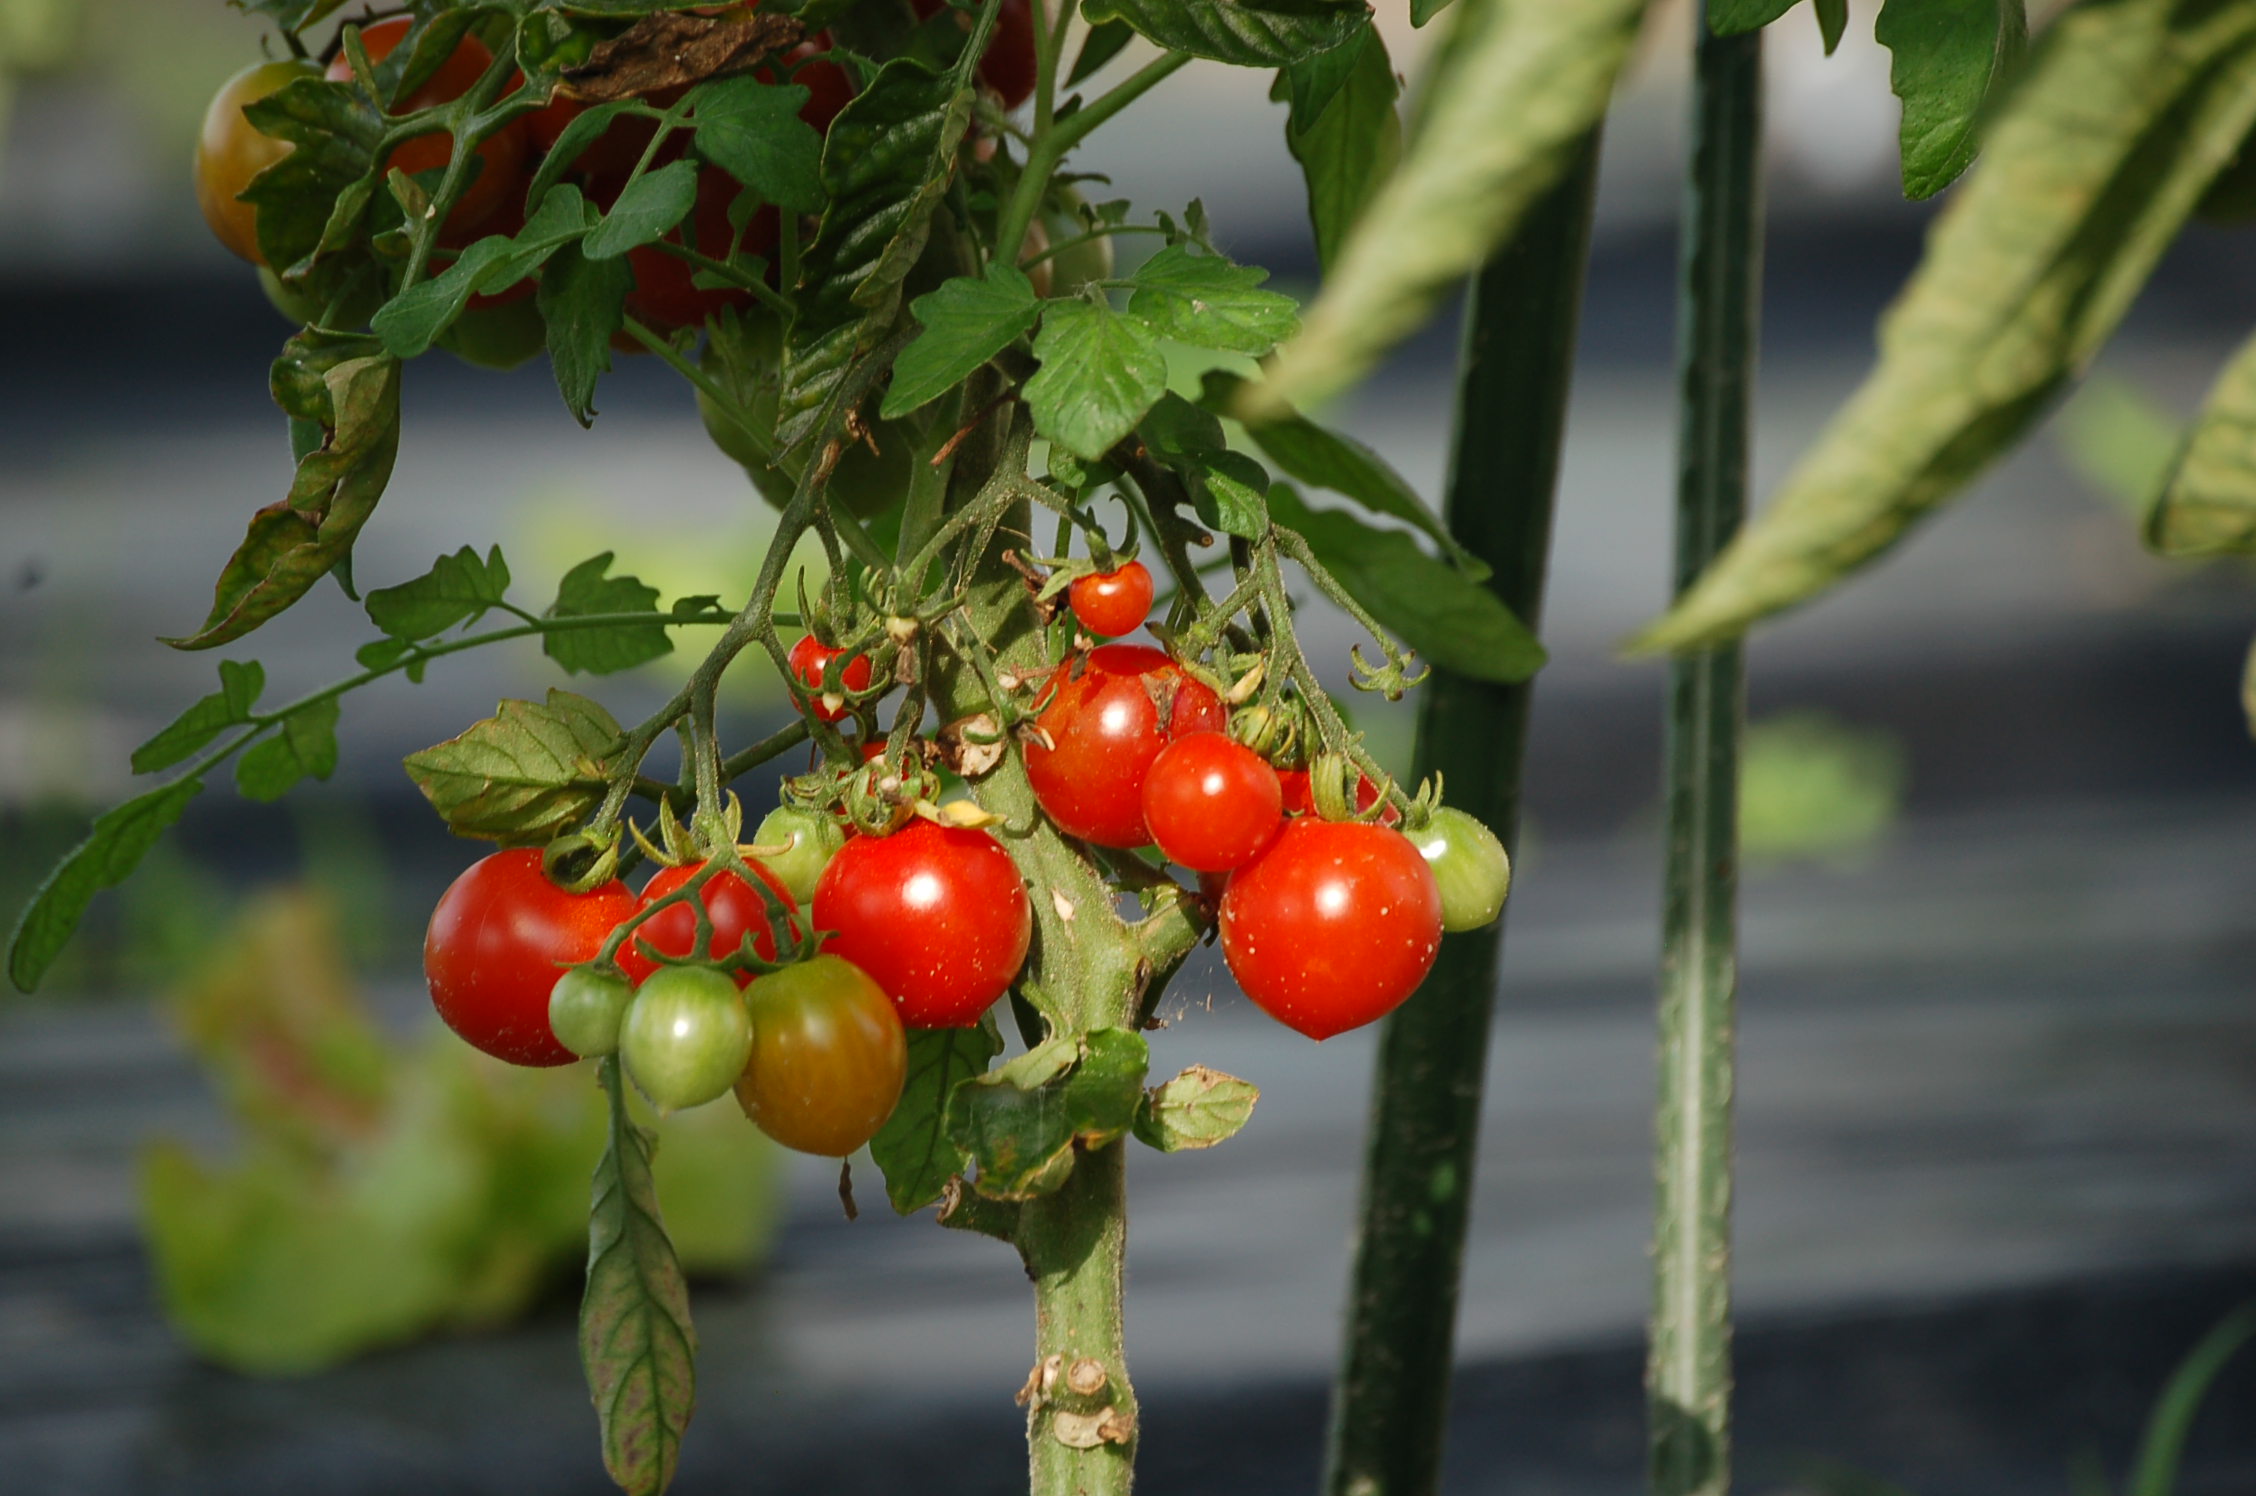 トマトの季節到来 アンプロムプテュ白馬オーナーブログ